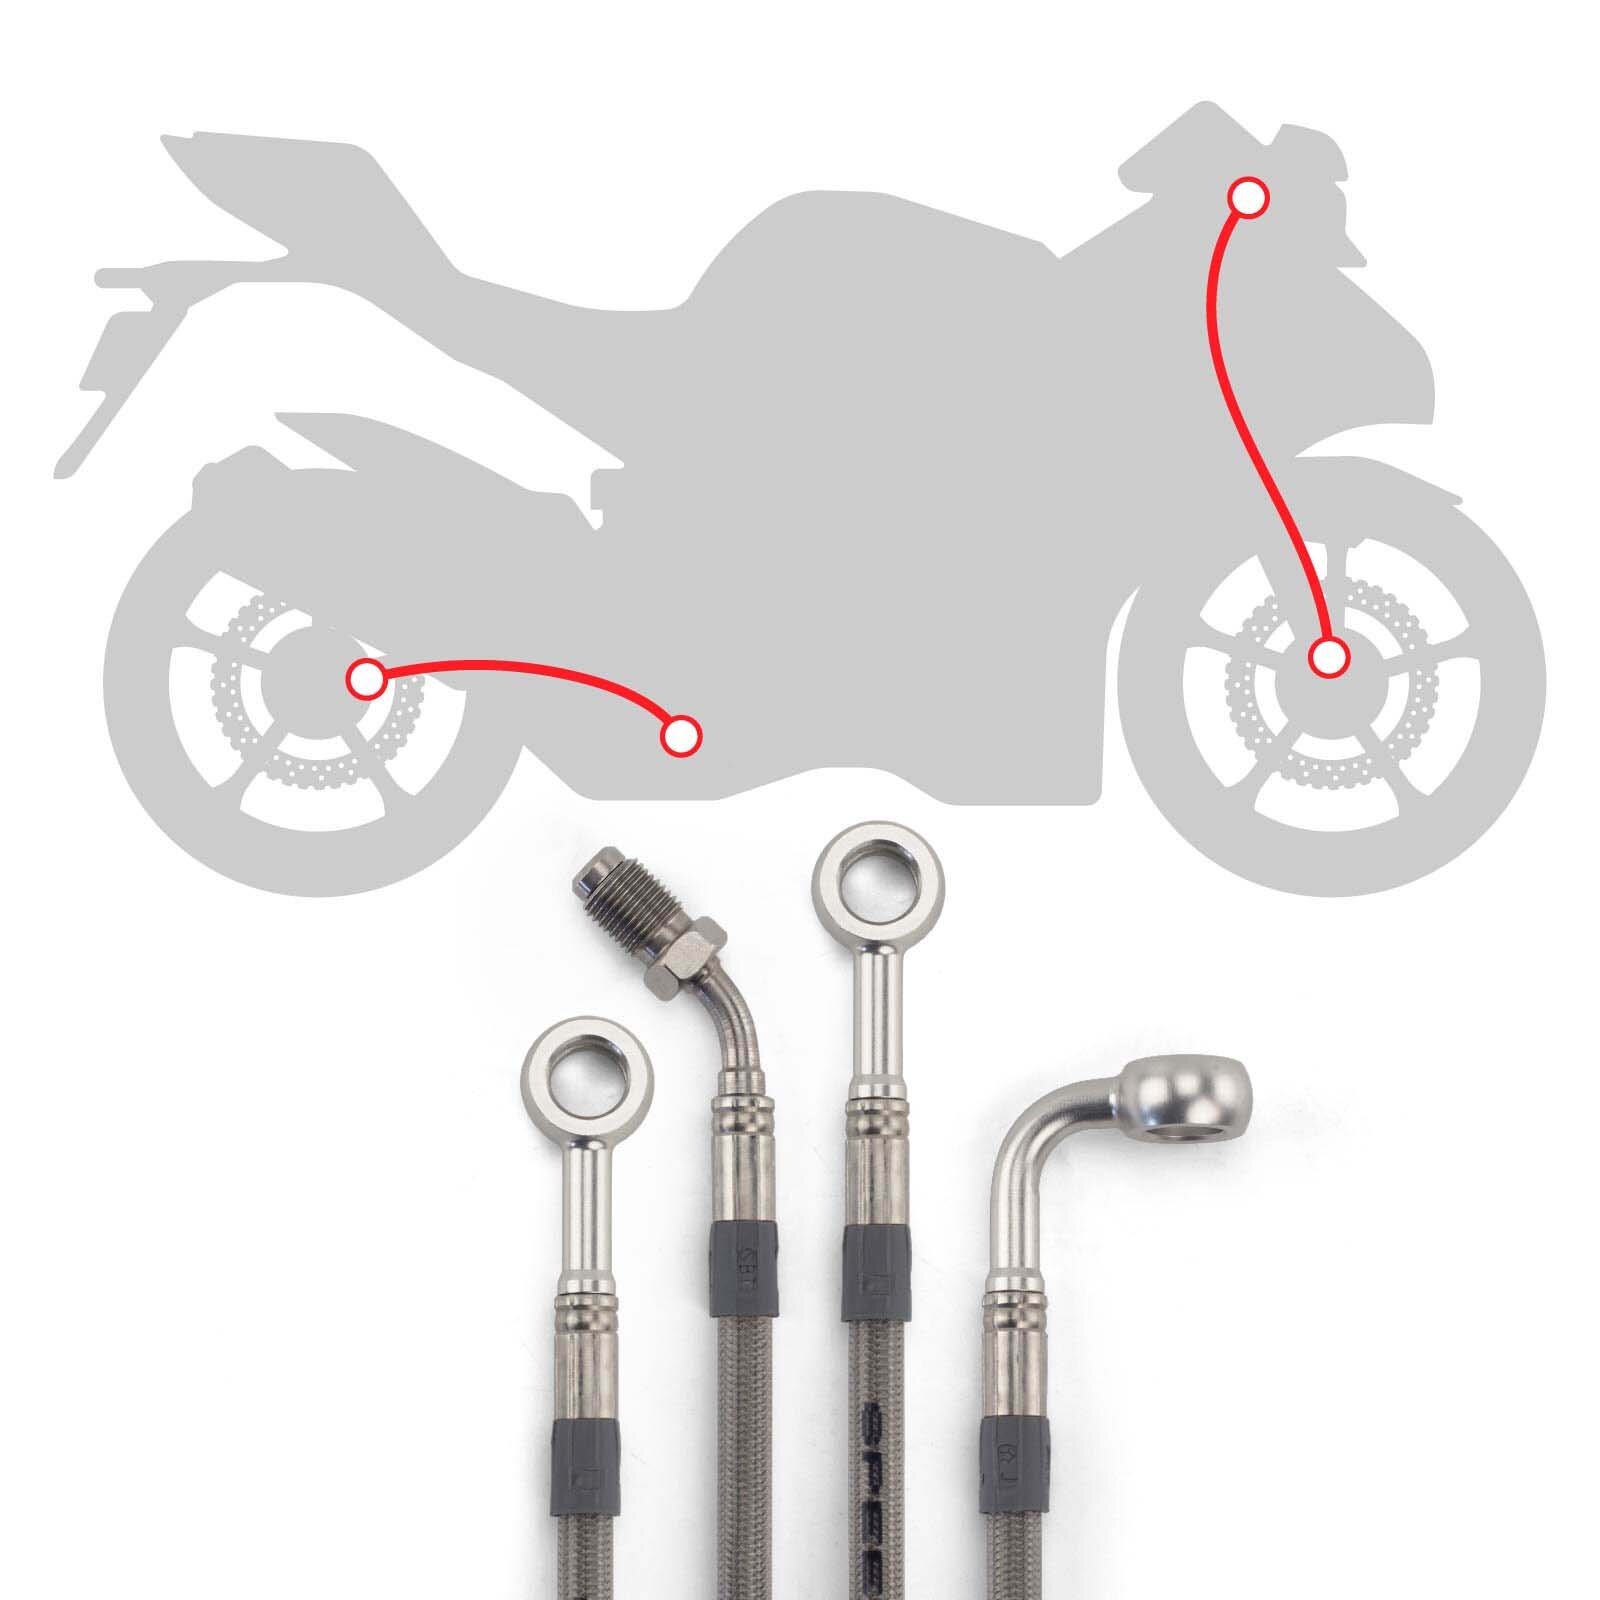 Stahlflex Bremsleitungs Kit mit silbernen Fittings und Leitungen mit transparenter Ummantelung, Infografik für die Verlegung der Leitungen vorne und hinten